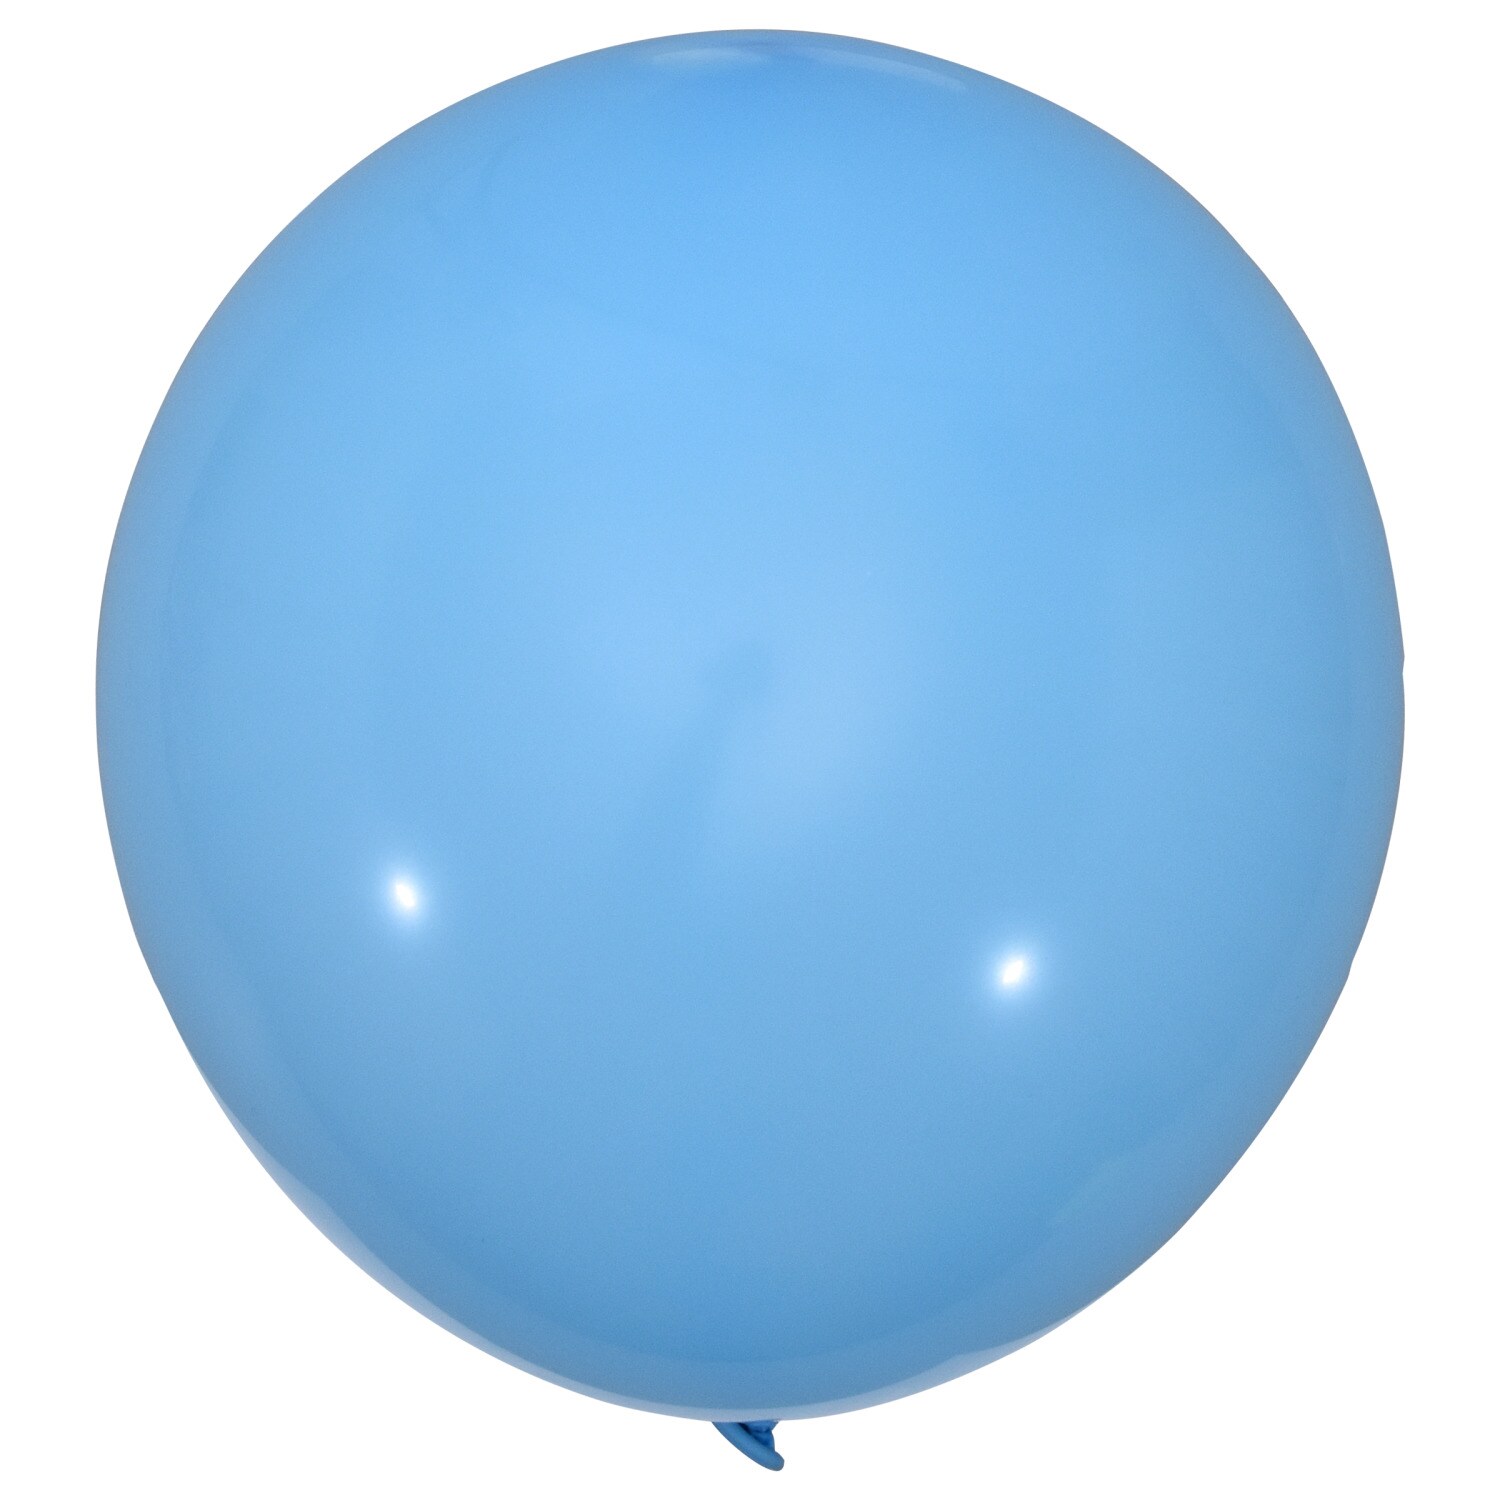 Голубому воздушному шару. Голубой шарик. Голубой воздушный шарик. Воздушный шарик круглый. Шар голубой пастель.